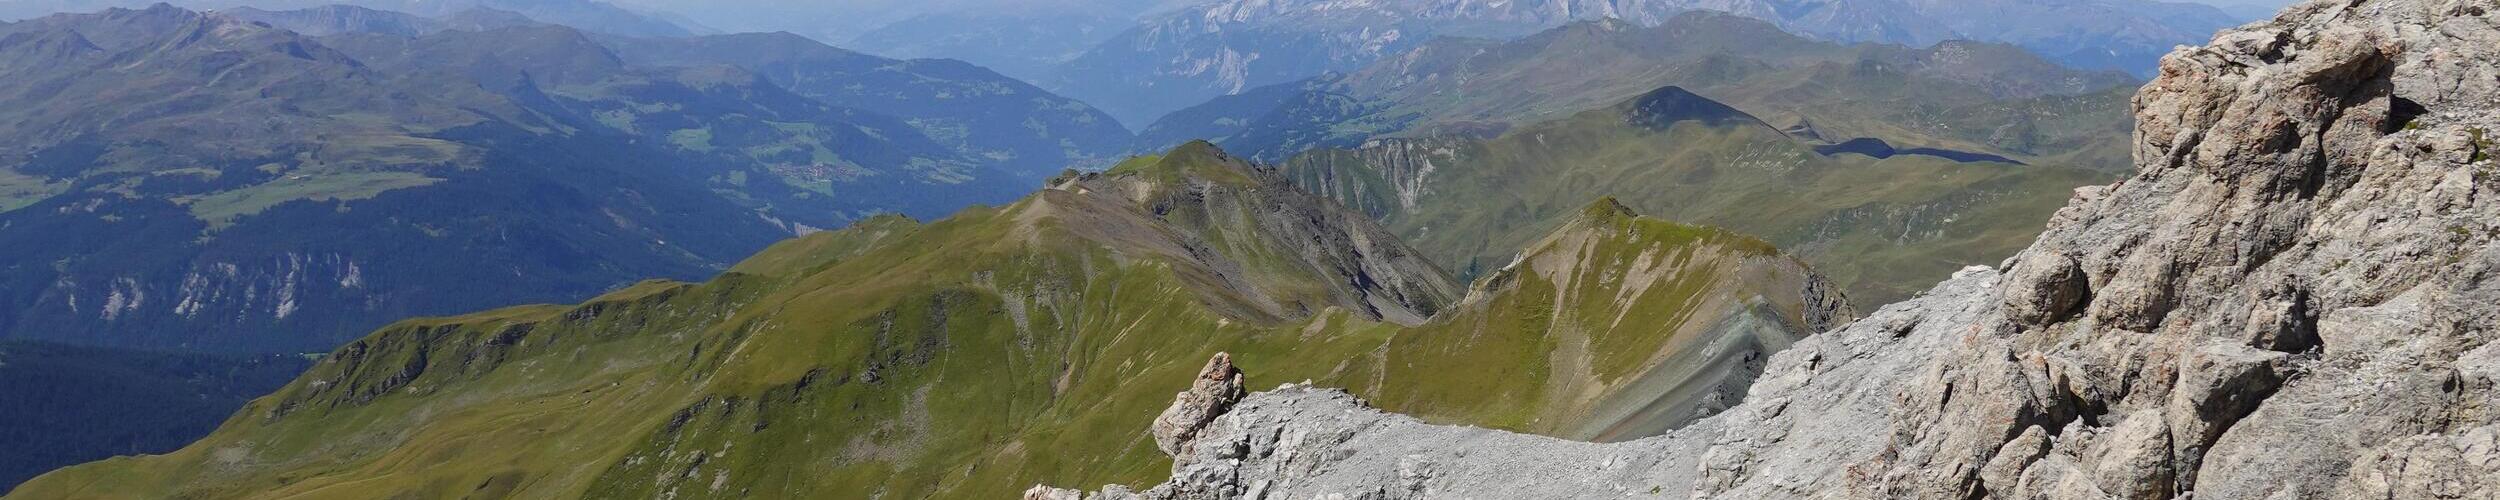 Bergwelt, Ferienwohnung Davos, Swiss Engineering | © iStock